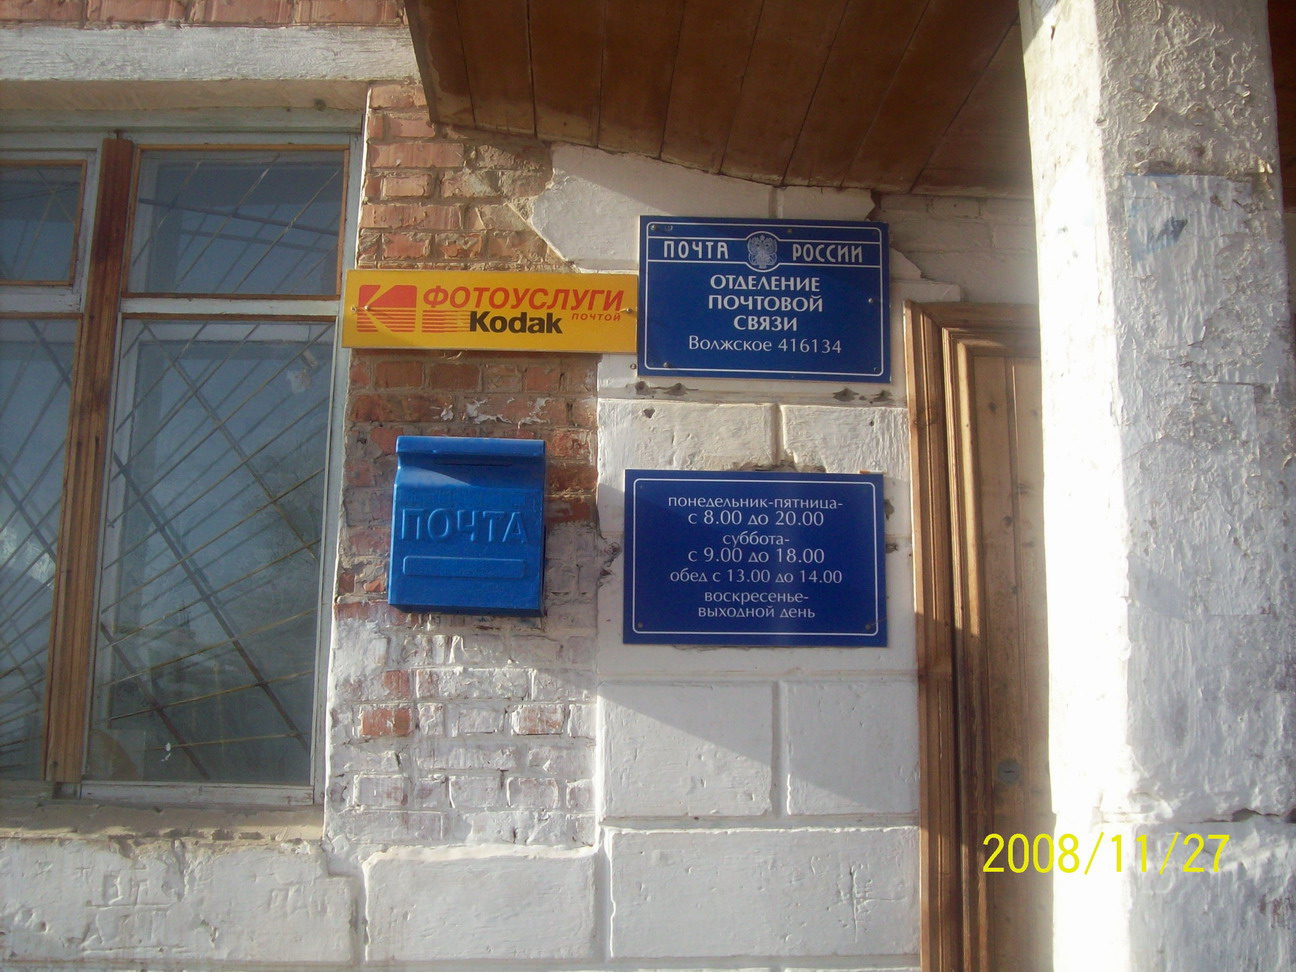 ВХОД, отделение почтовой связи 416134, Астраханская обл., Наримановский р-он, Волжское